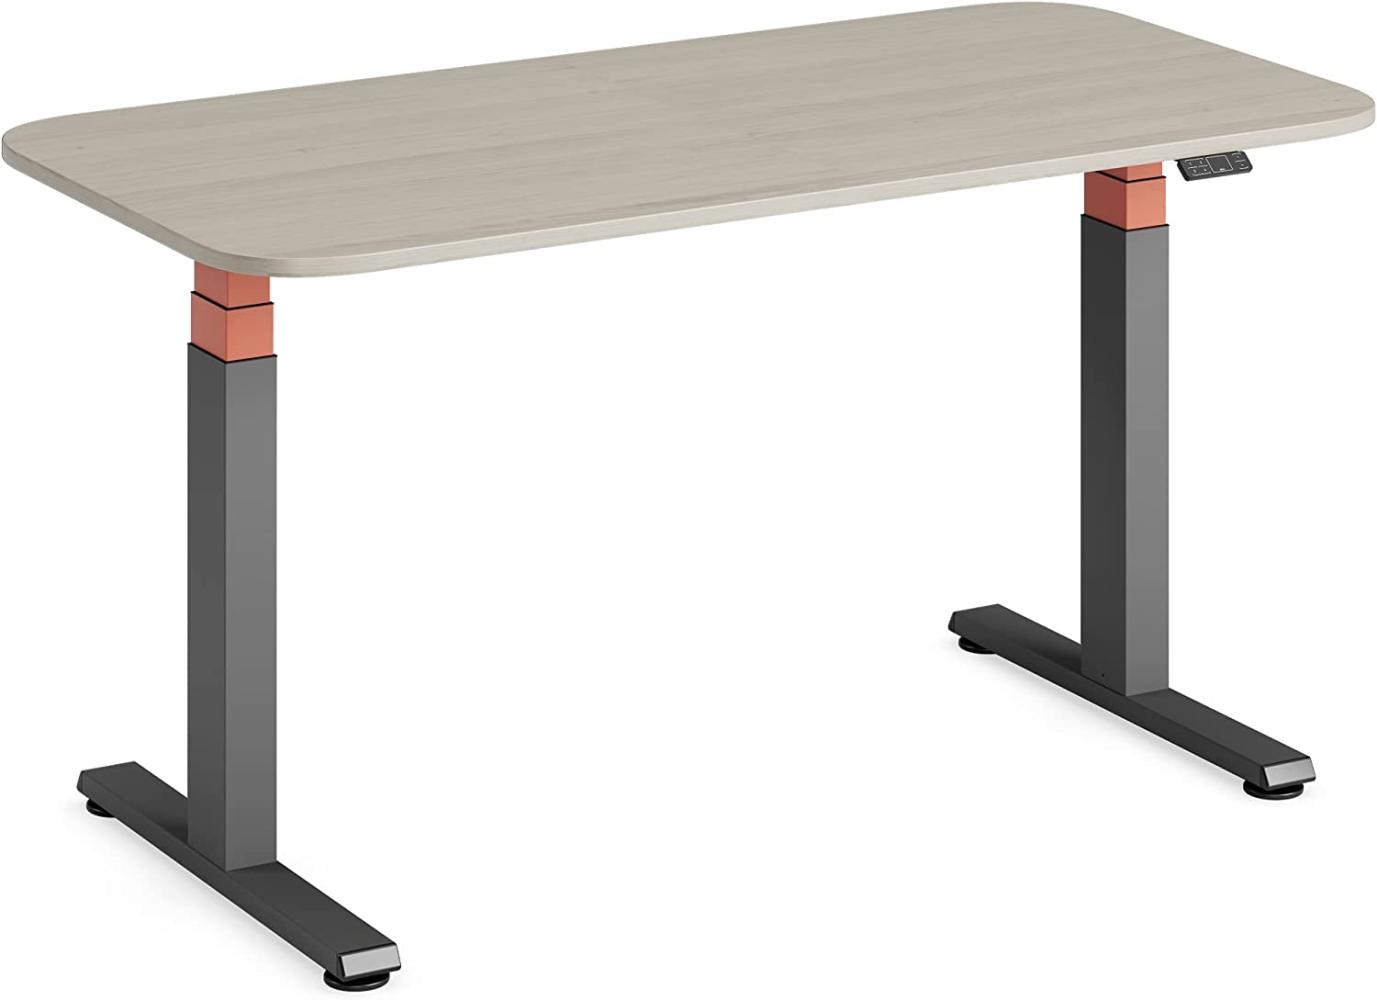 Steelcase Solo höhenverstellbarer Sitz-Steh-Schreibtisch mit Tischplatte in Akazie und Gestell in Amsel mit der Akzentfarbe Safran (140 x 70 cm) Bild 1